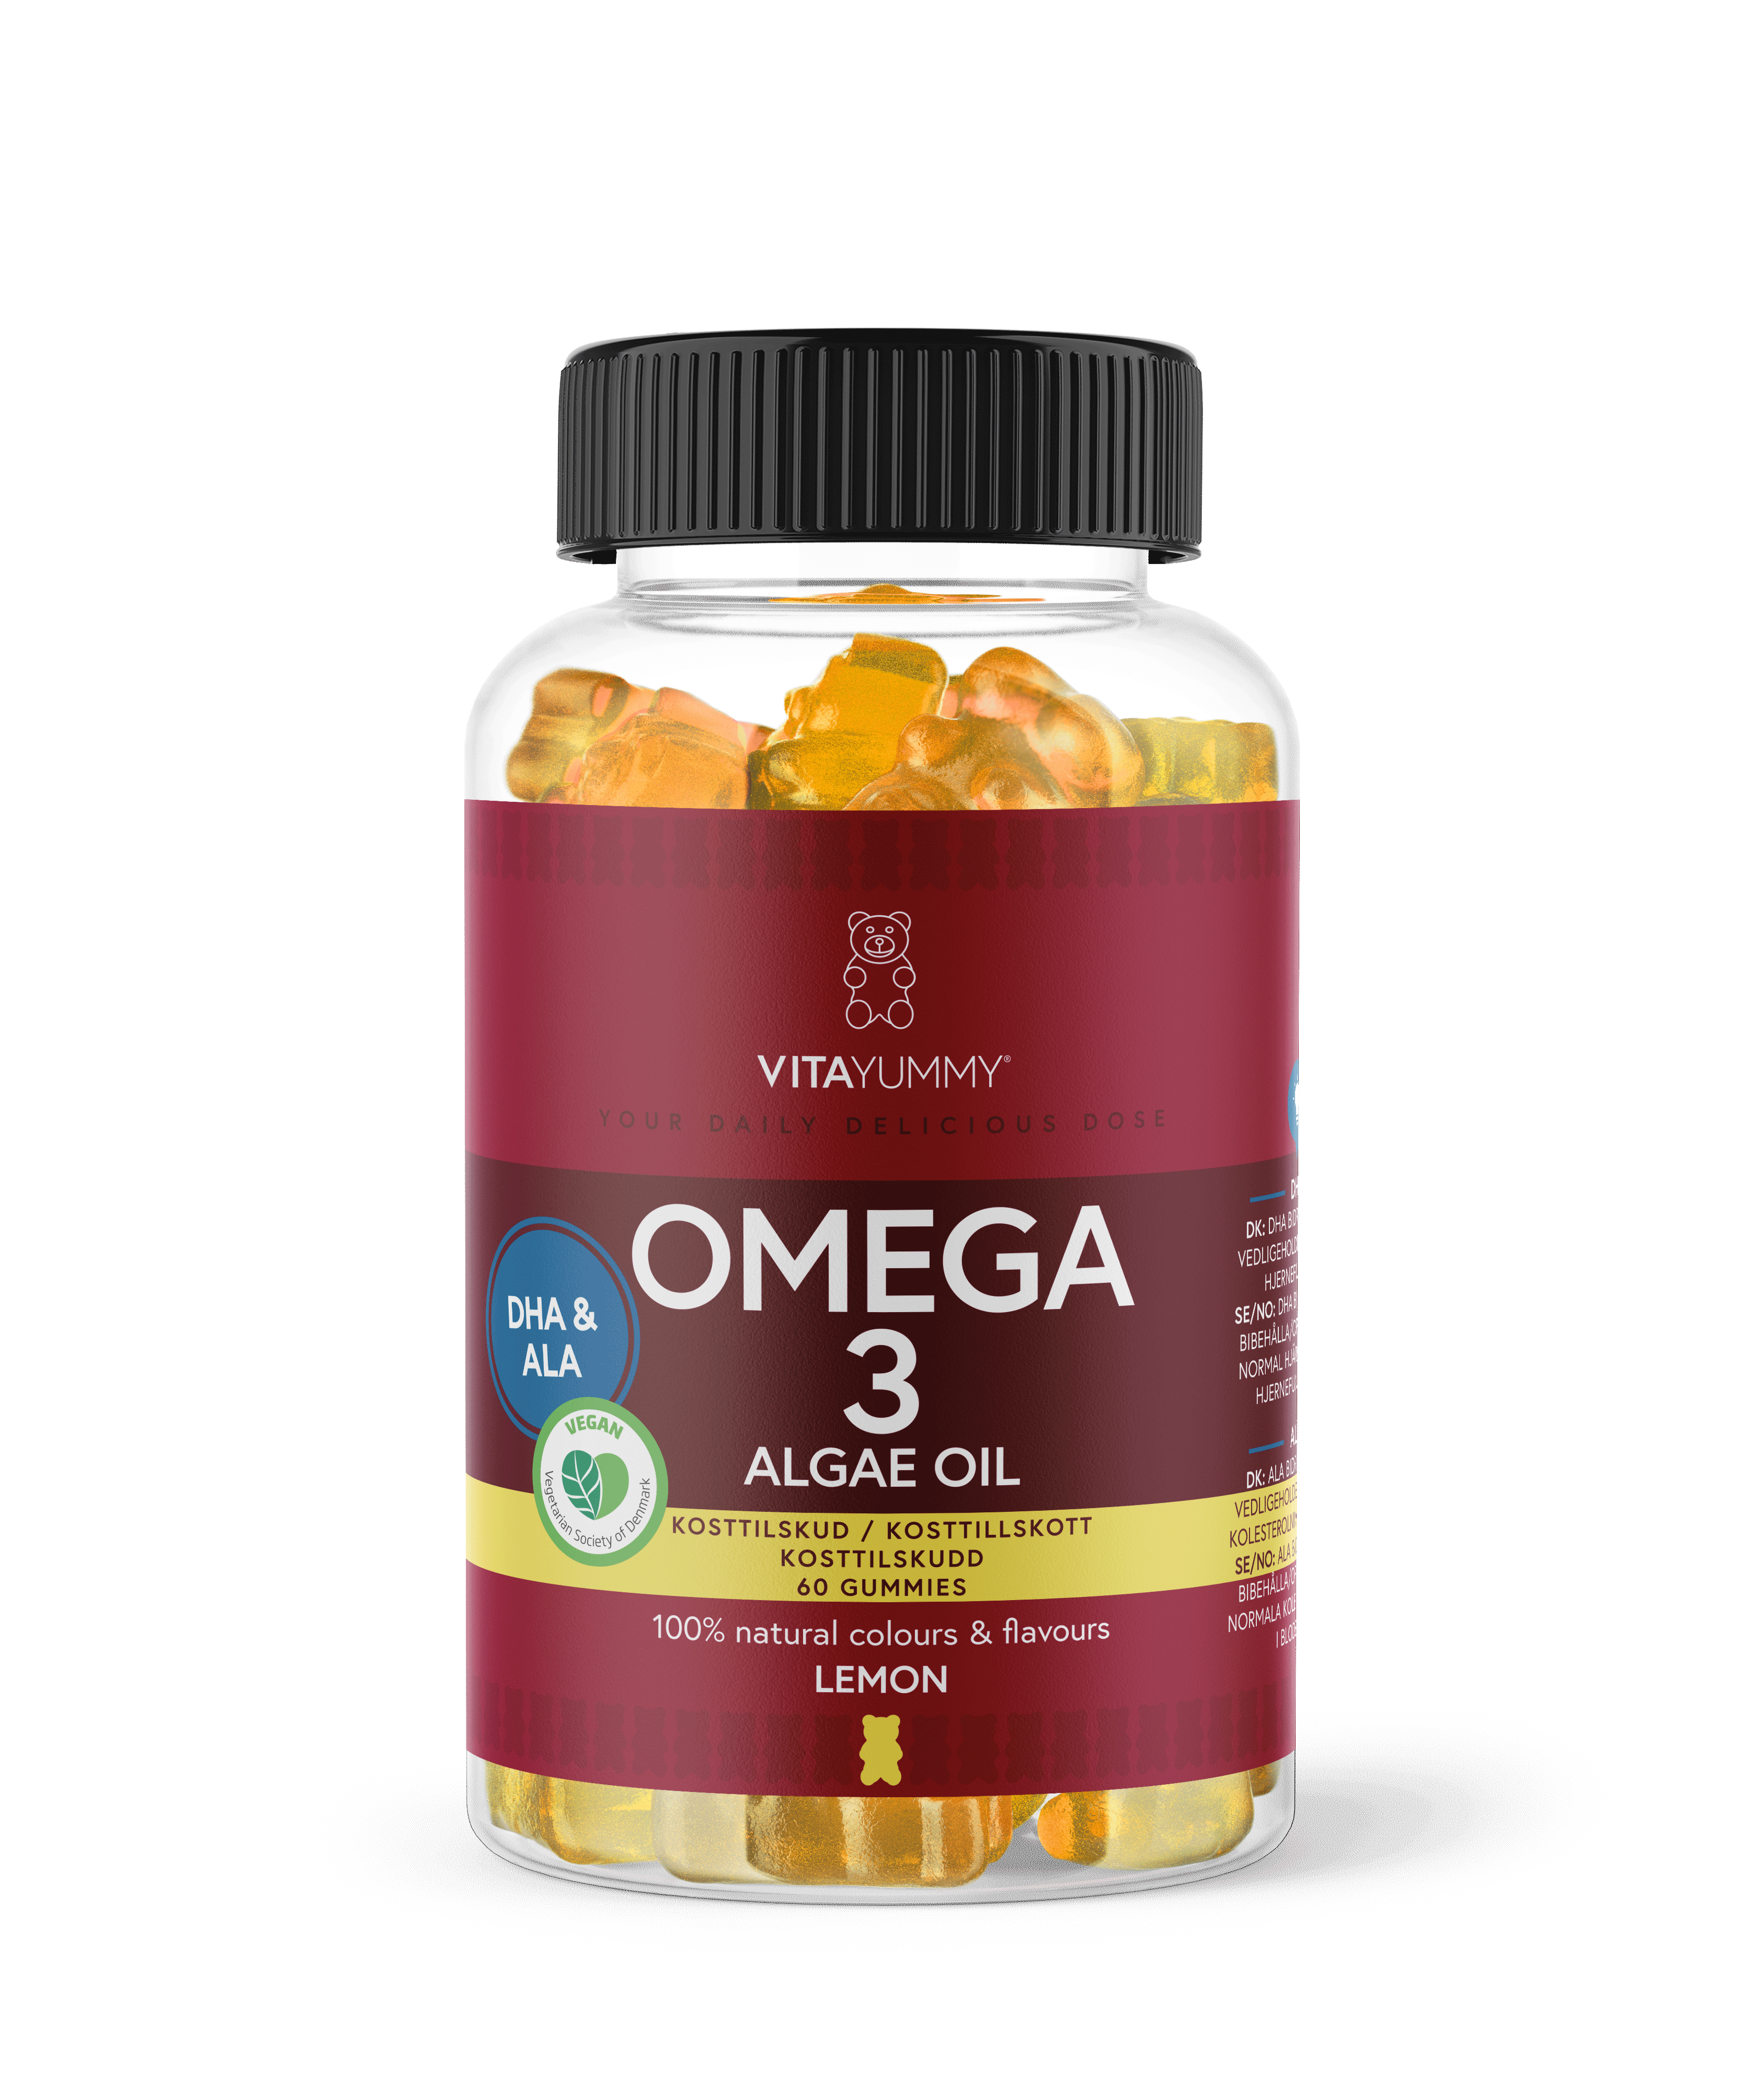 Omega 3 Lemon